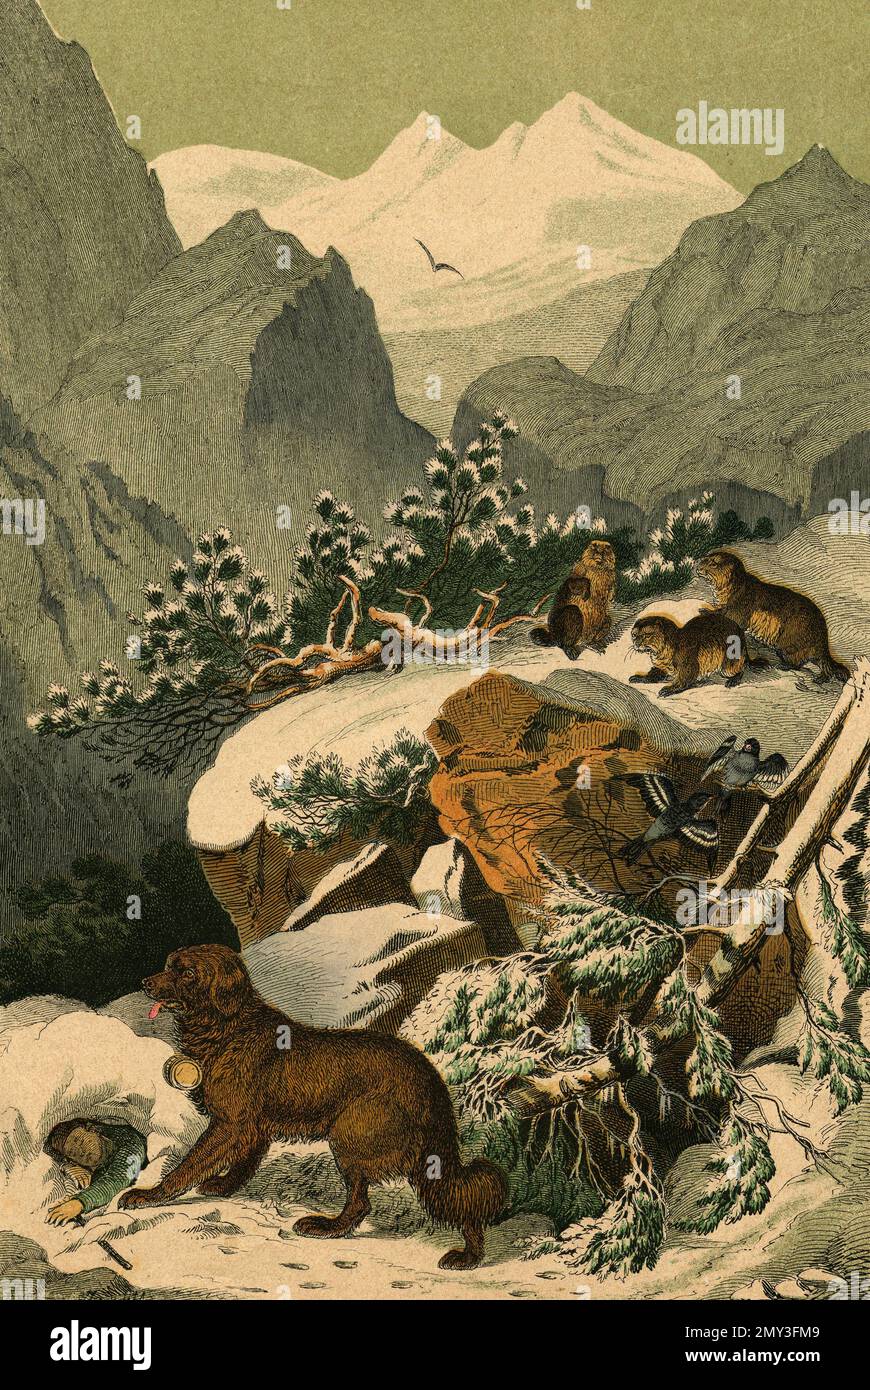 Marmots, Great St Bernard cane, e neve-finches uccelli nella regione delle Alpi dell'Europa centrale, illustrazione a colori, il libro illustrativo di Adam White, 1868 Foto Stock